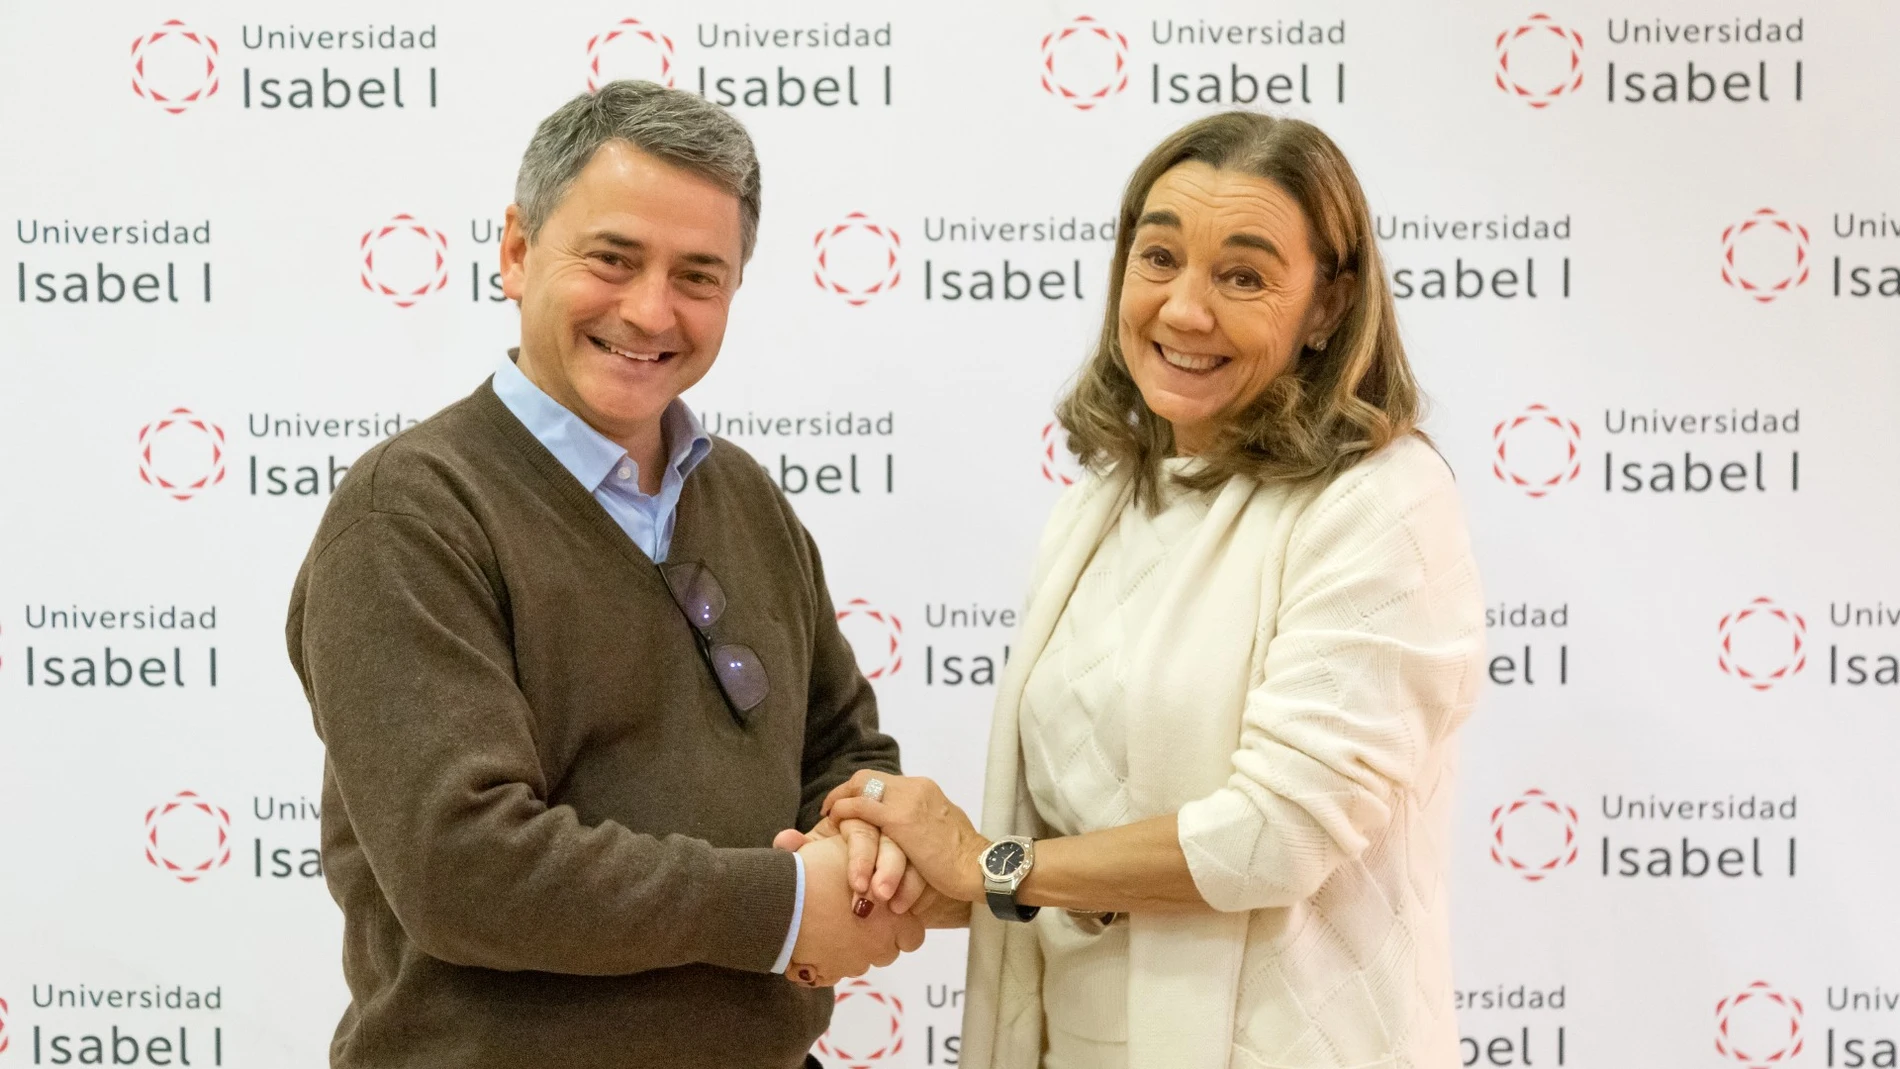 La presidenta de la Universidad Isabel I, María Jesús Cuéllar y el presidente de Entrepreneurship Forum of Spain de MIT Alumni, Juan Antonio Latasa, firman el acuerdo